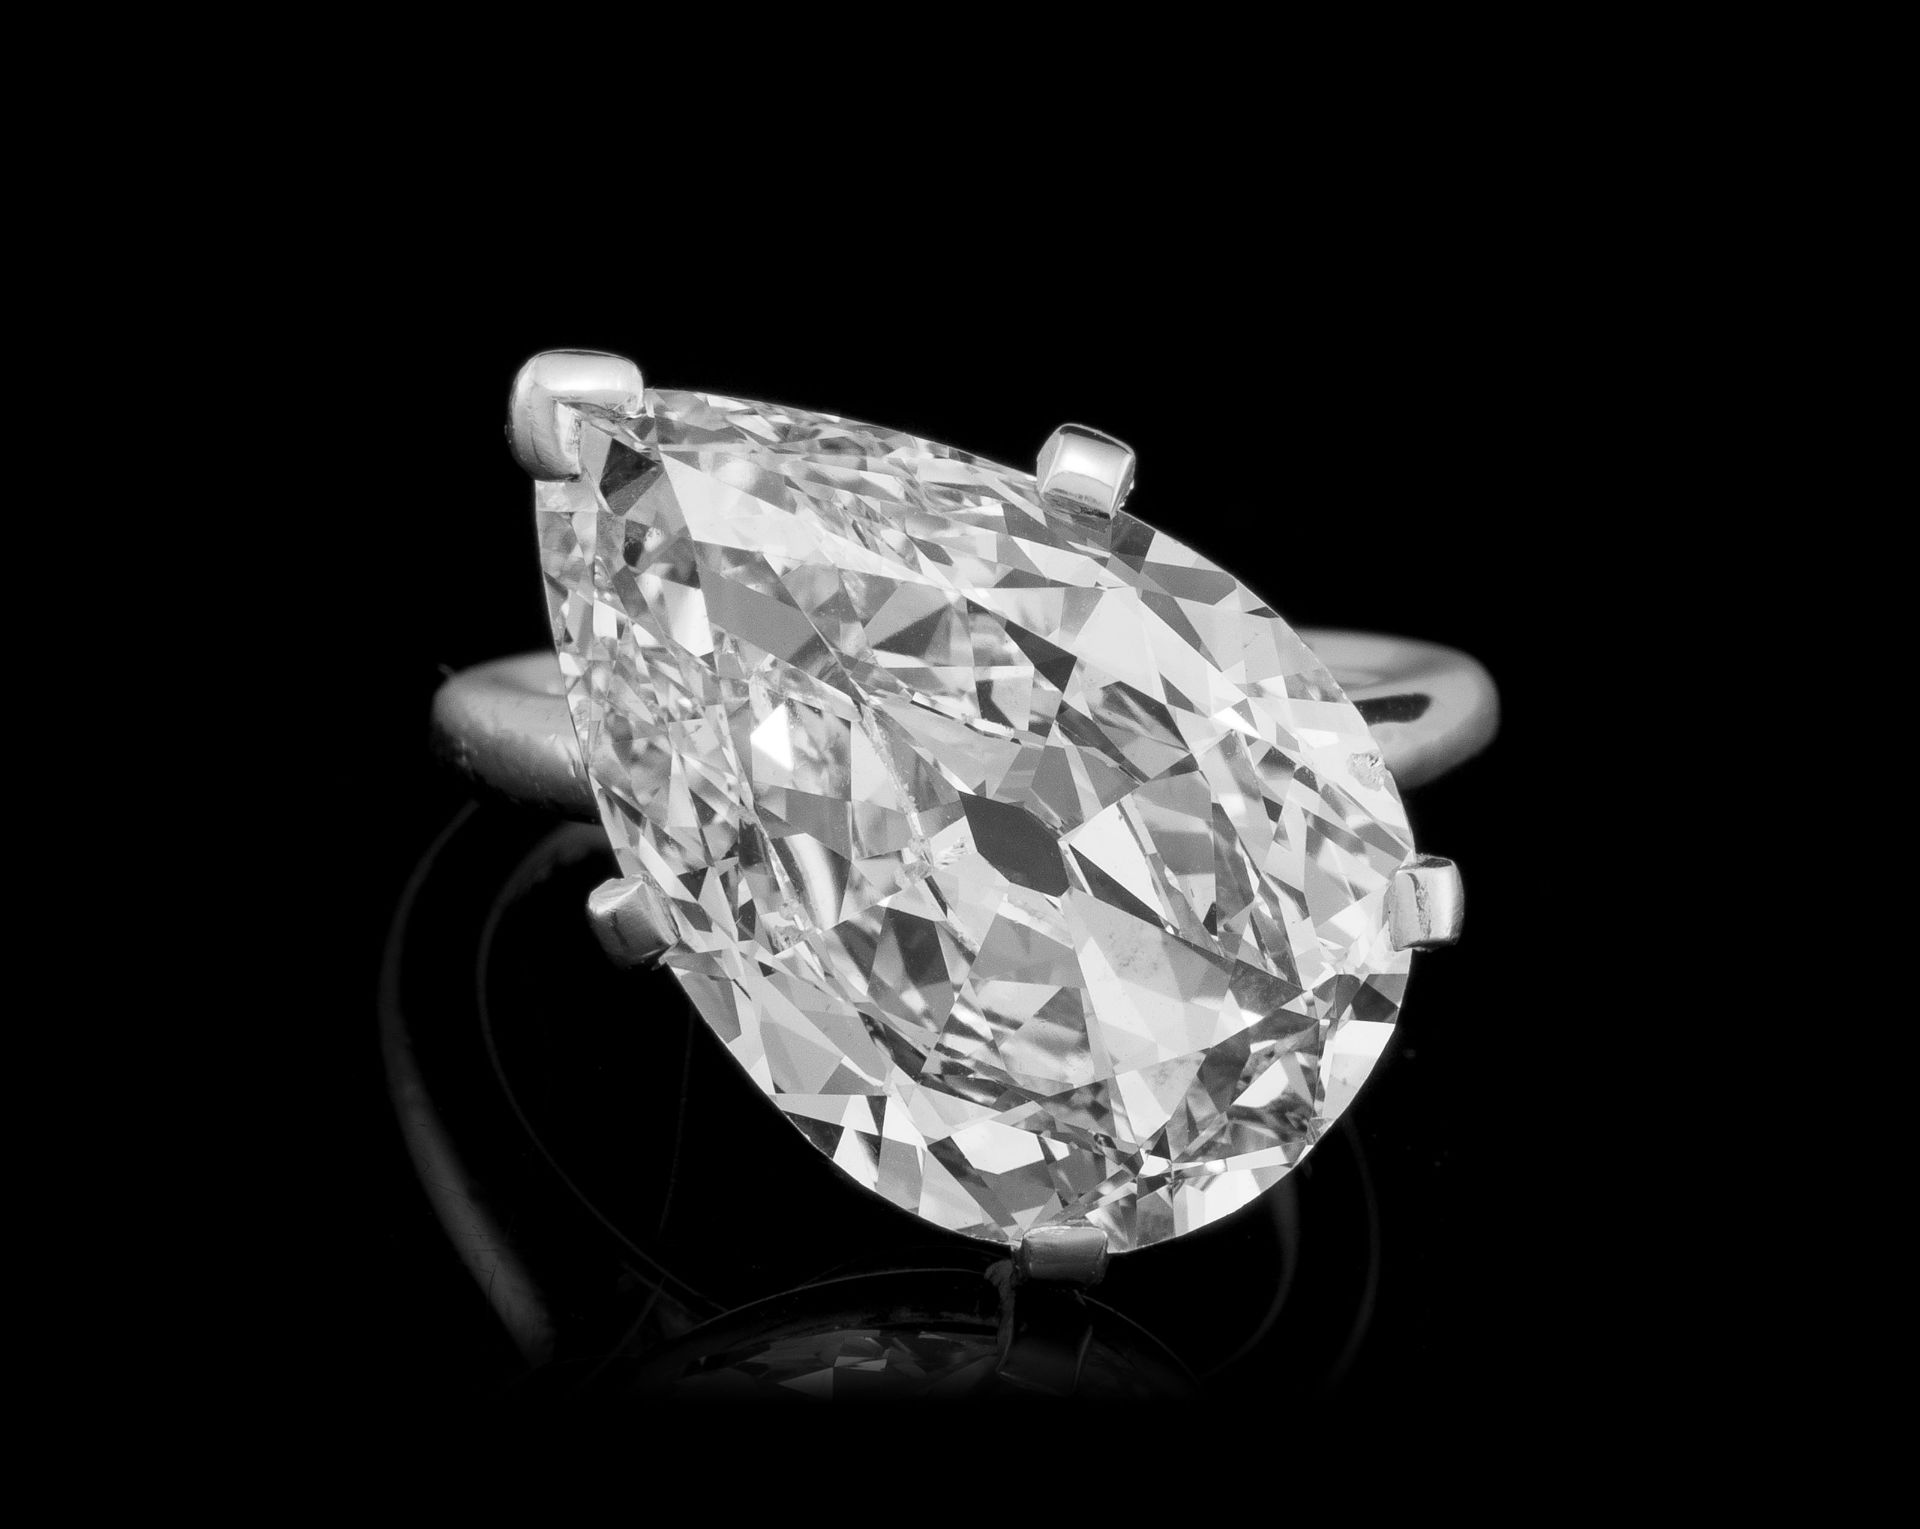 Cartier, monture par, bague platine sertie d'un diamant taille poire modifié positionné de manière o